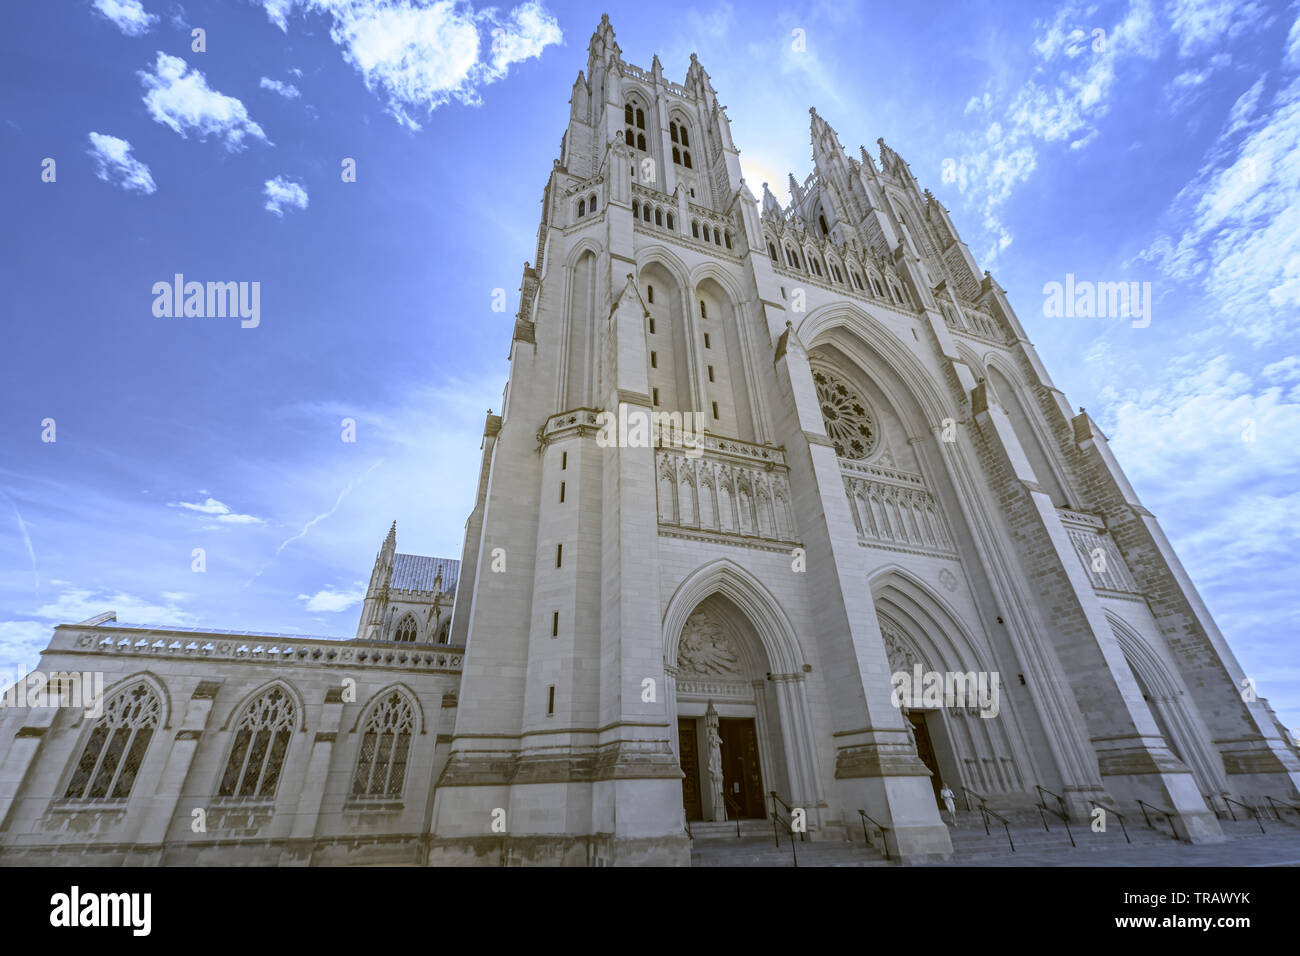 Wunderschöne und beeindruckende gotische Kathedrale vor einem blauen bewölkten Himmel Stockfoto